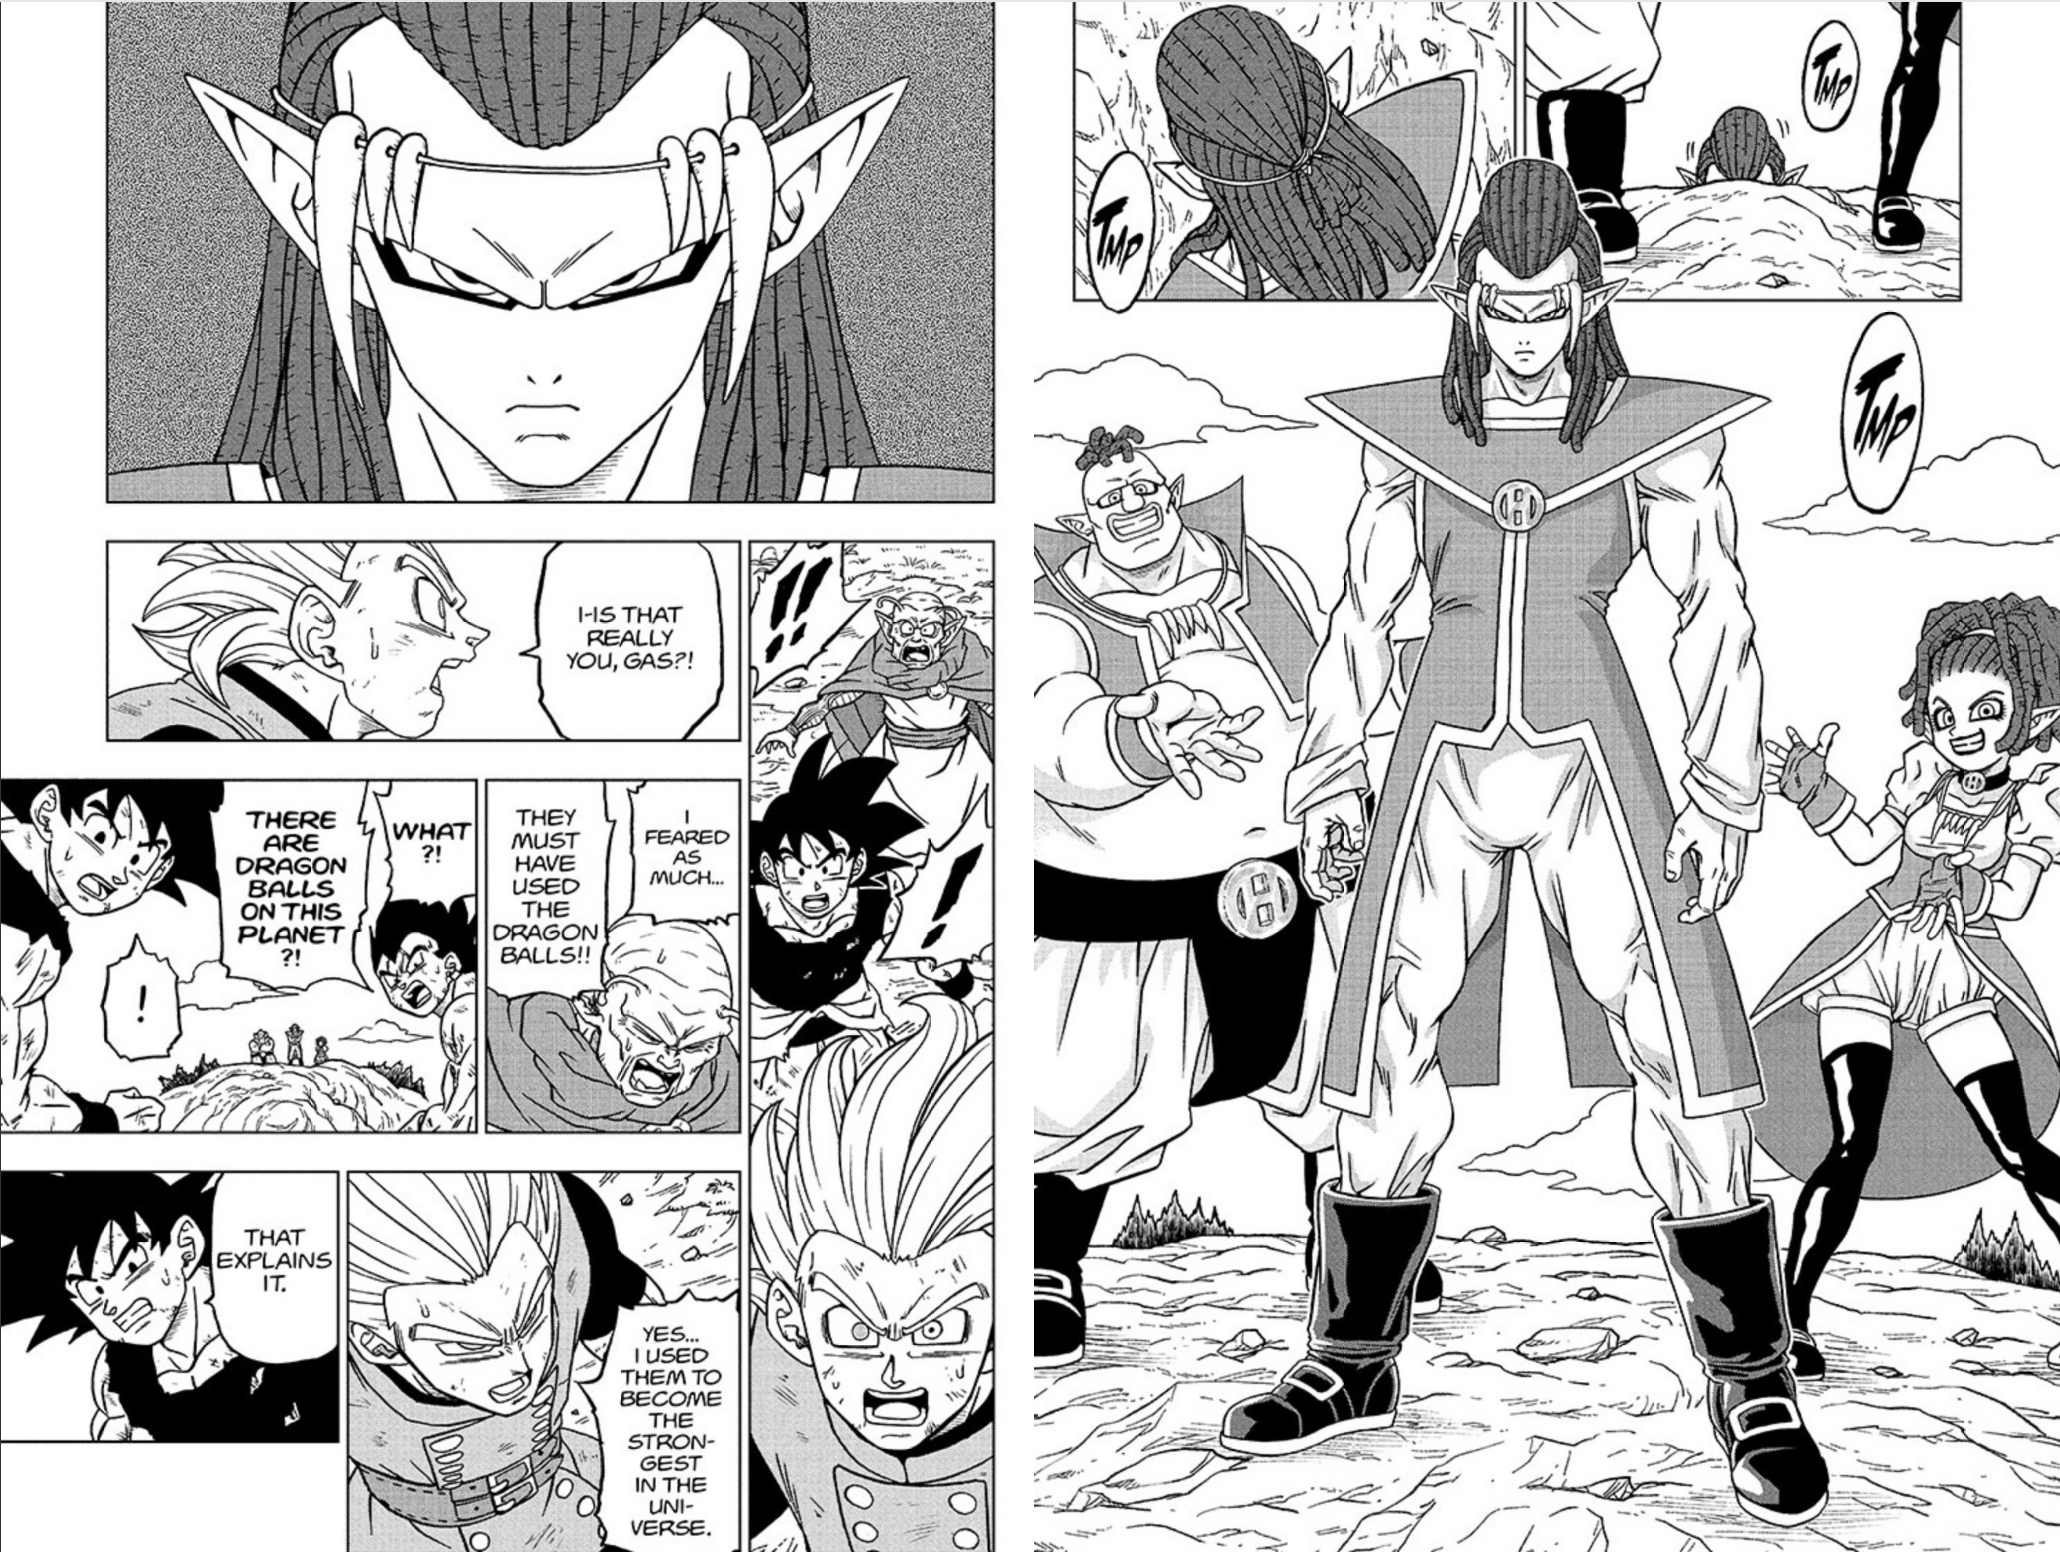 Art from Dragon Ball Super Chapter 78, by Akira Toriyama and Toyotarou.